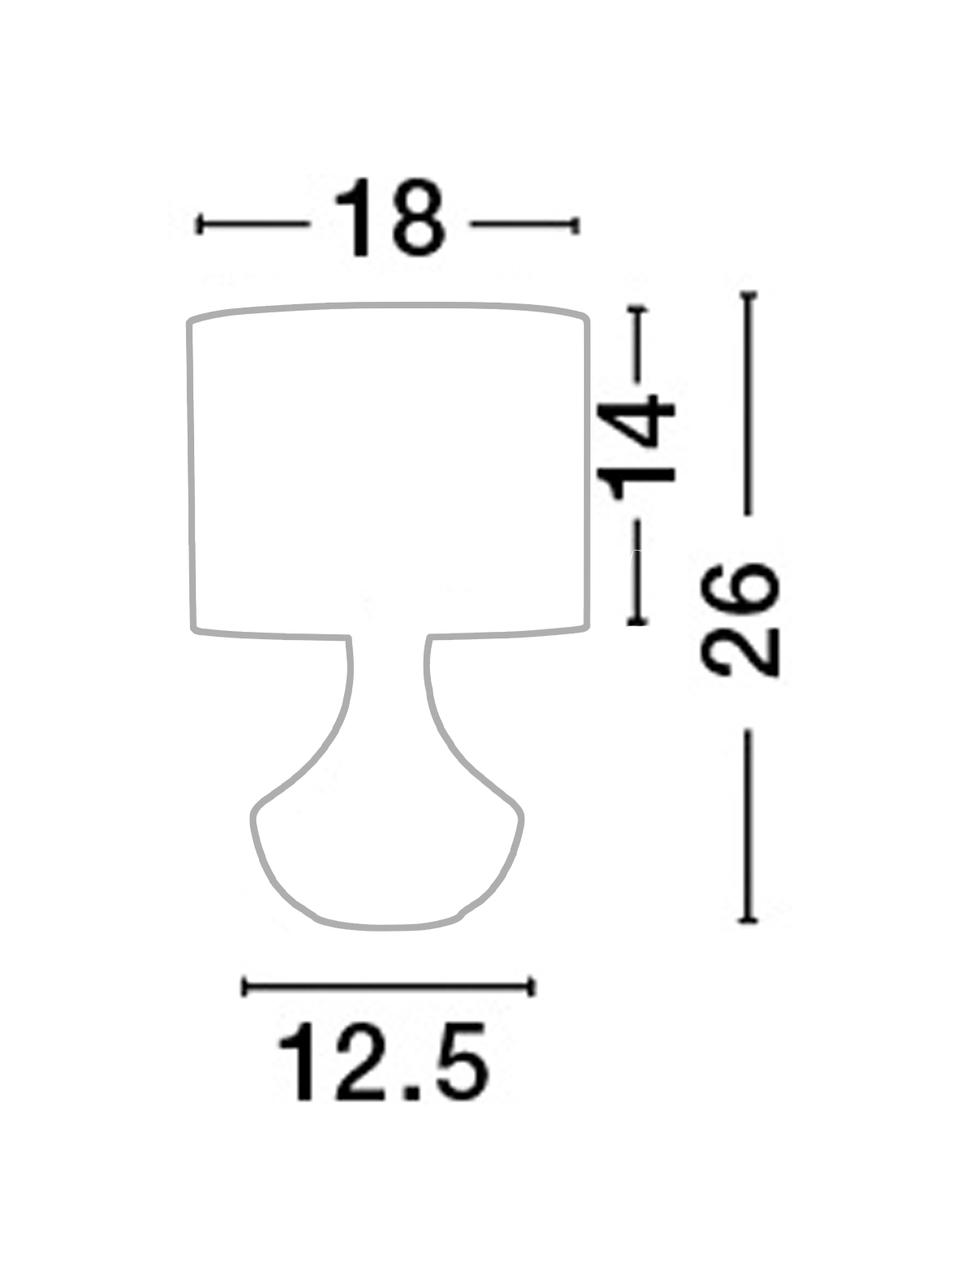 Mały lampa stołowa Rosia, Czarny, Ø 18 x W 26 cm